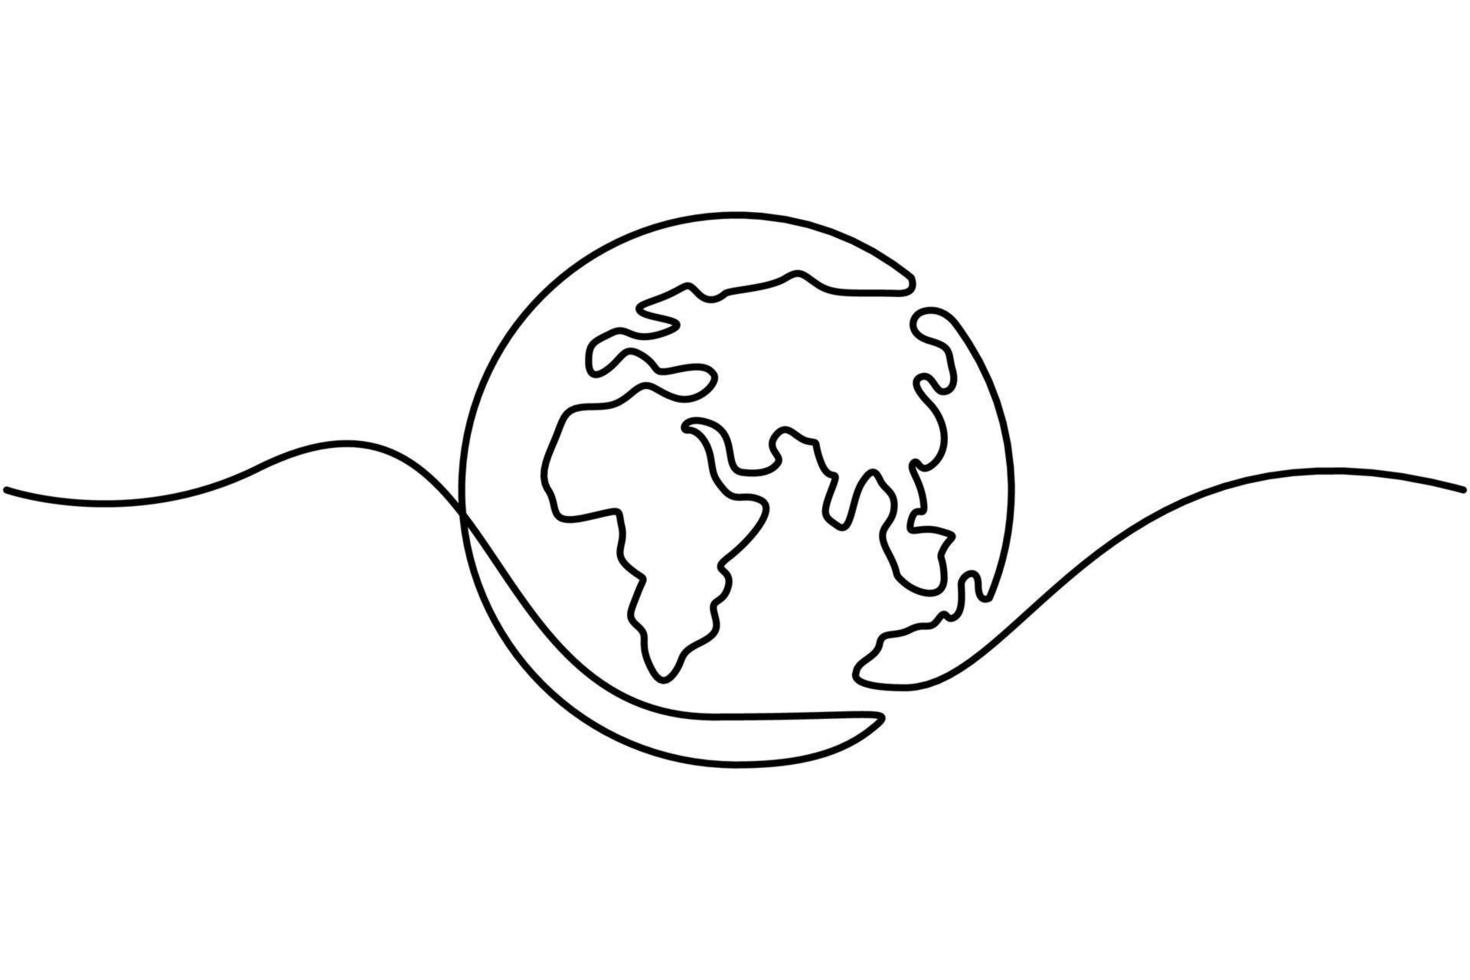 une ligne continue dessinant un vecteur de carte du monde sur fond blanc. carte du monde concept de composition de points et de lignes du commerce mondial. illustration vectorielle vecteur gratuit